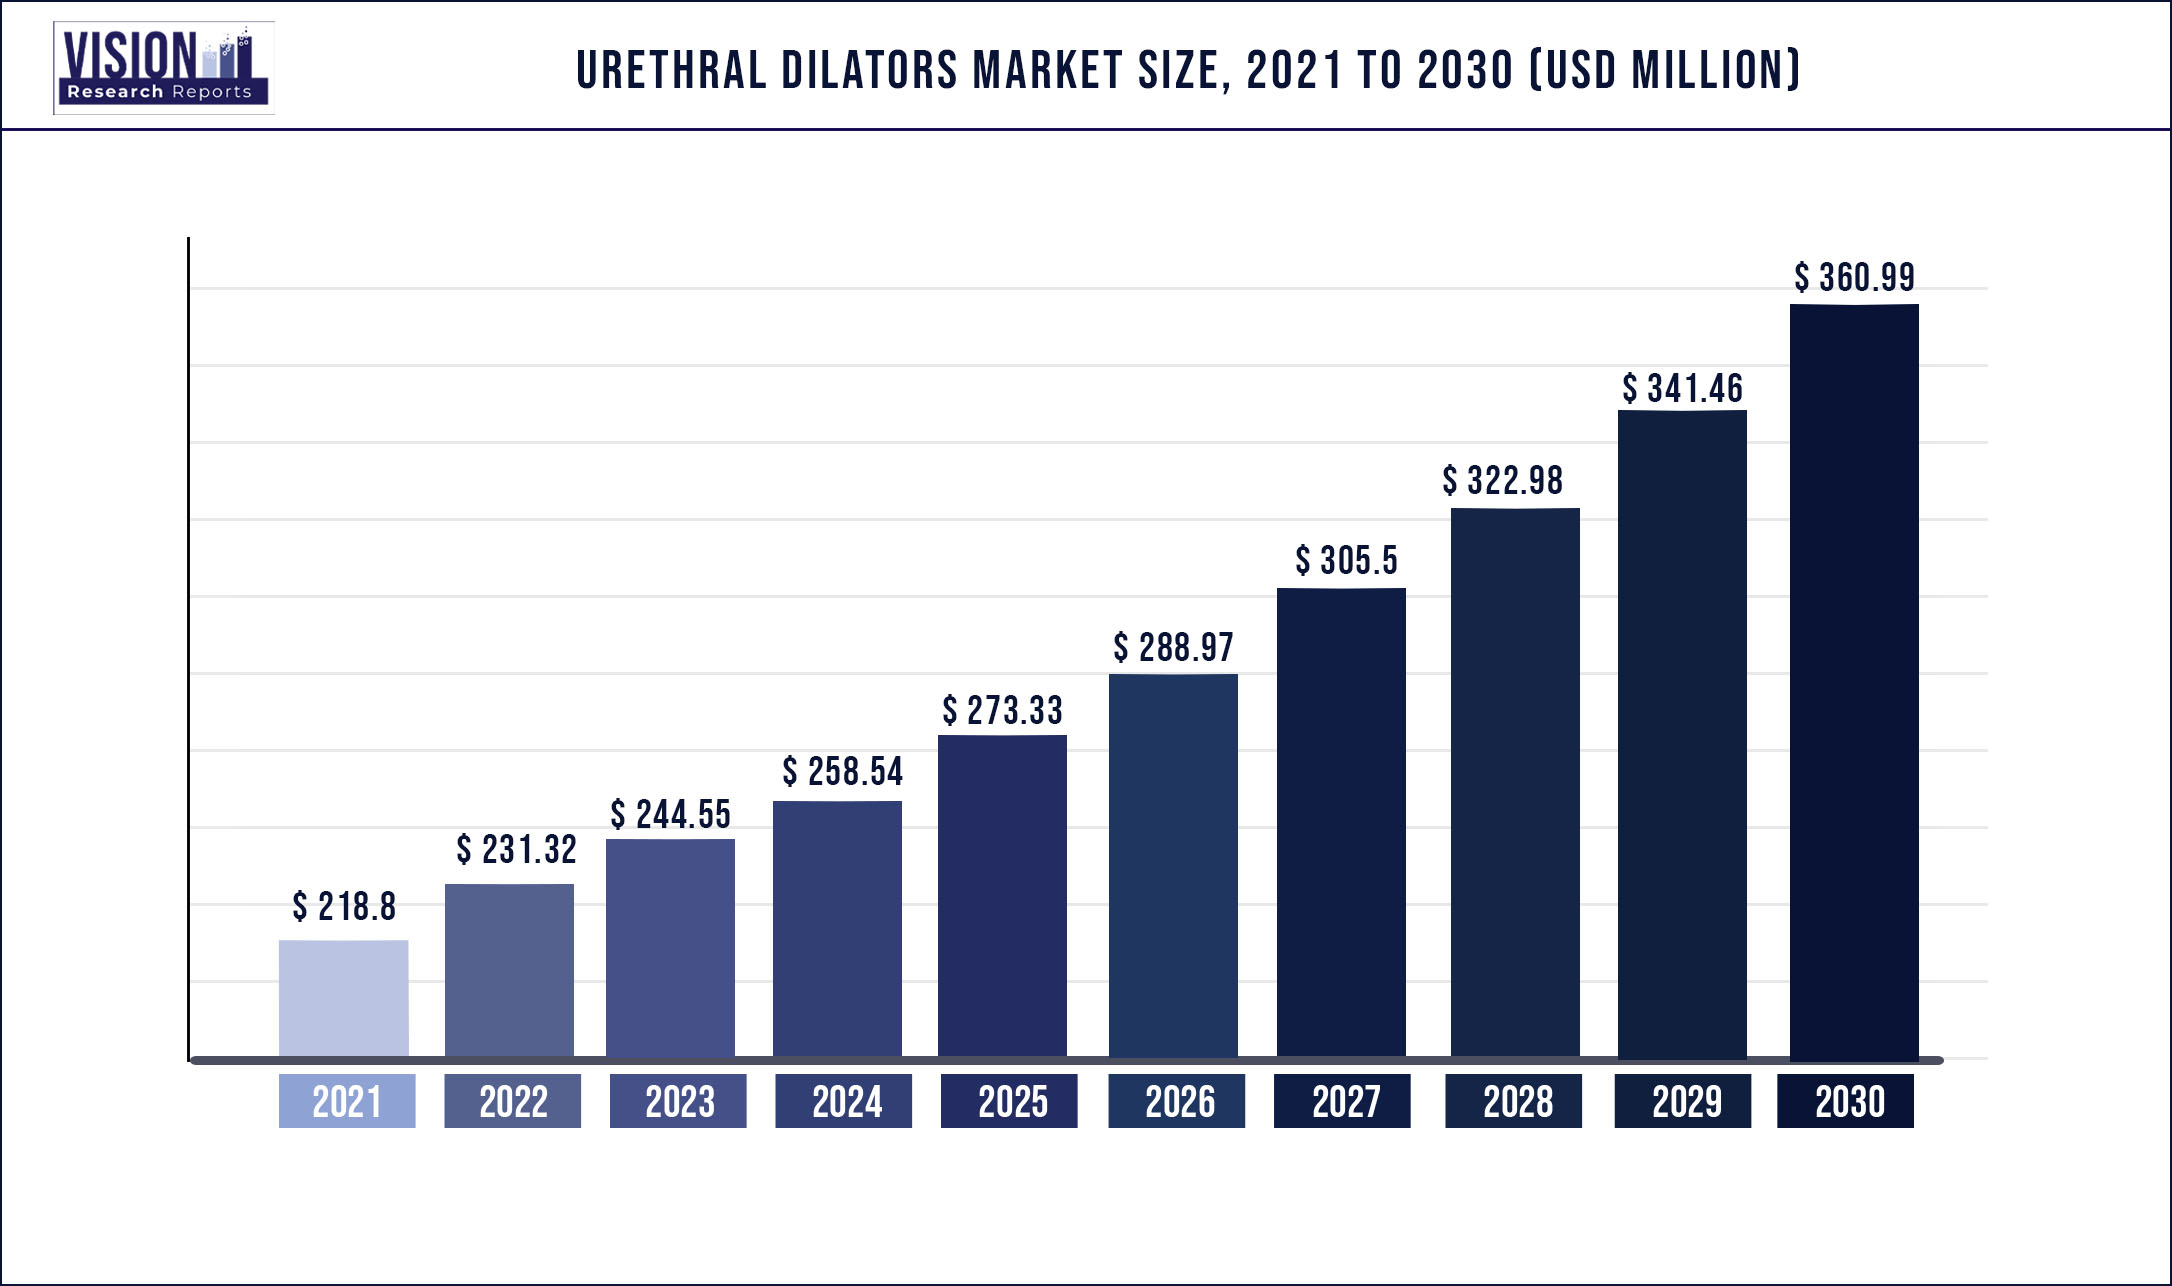 Urethral Dilators Market Size 2021 to 2030